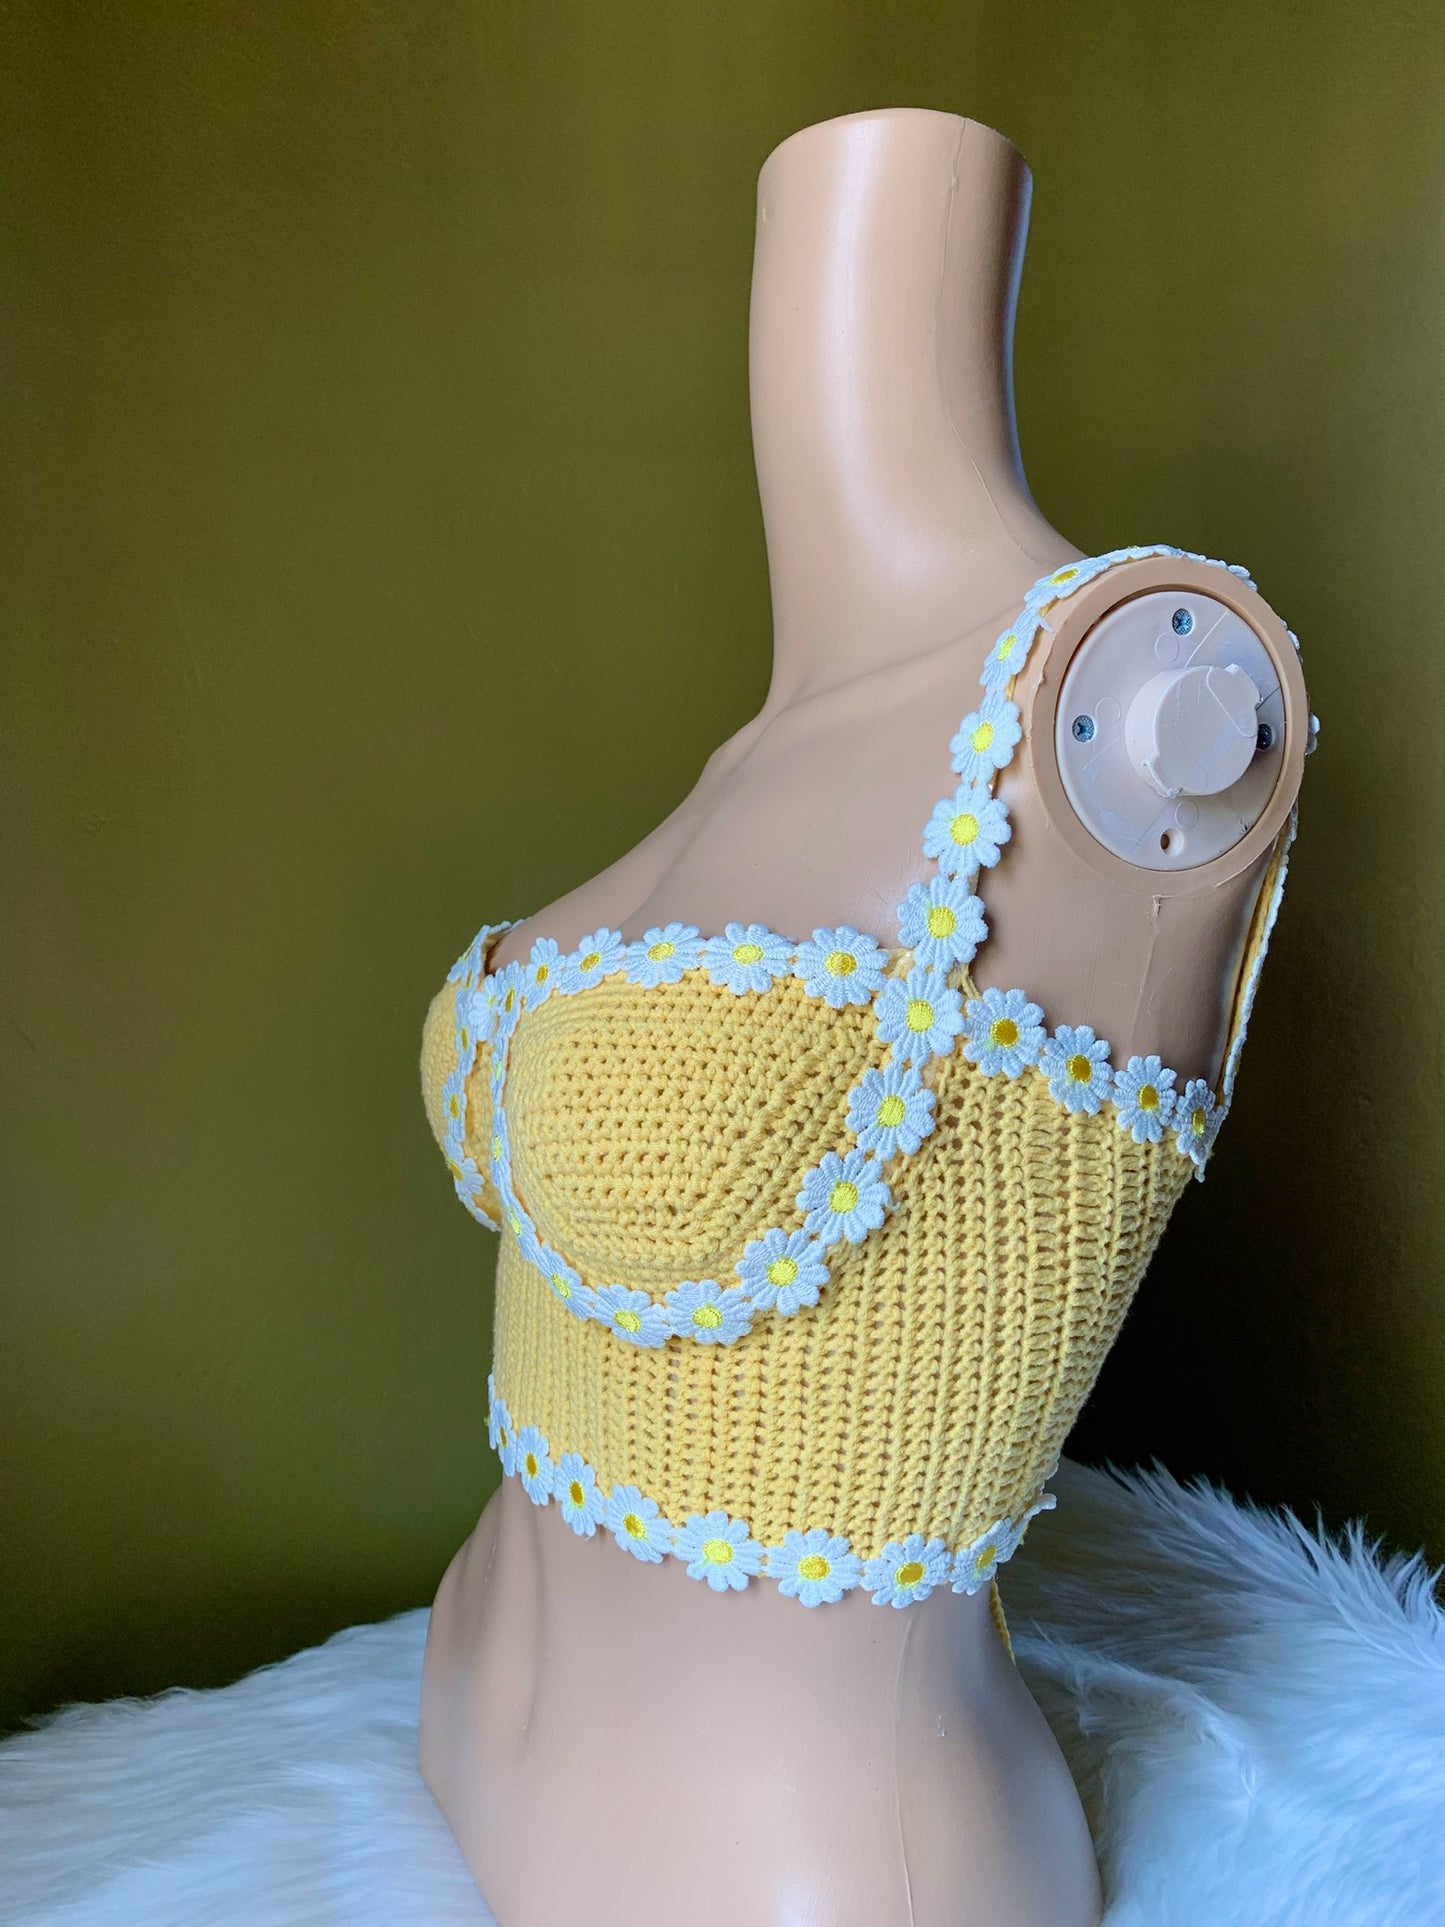 Flor Daisy Crochet Top